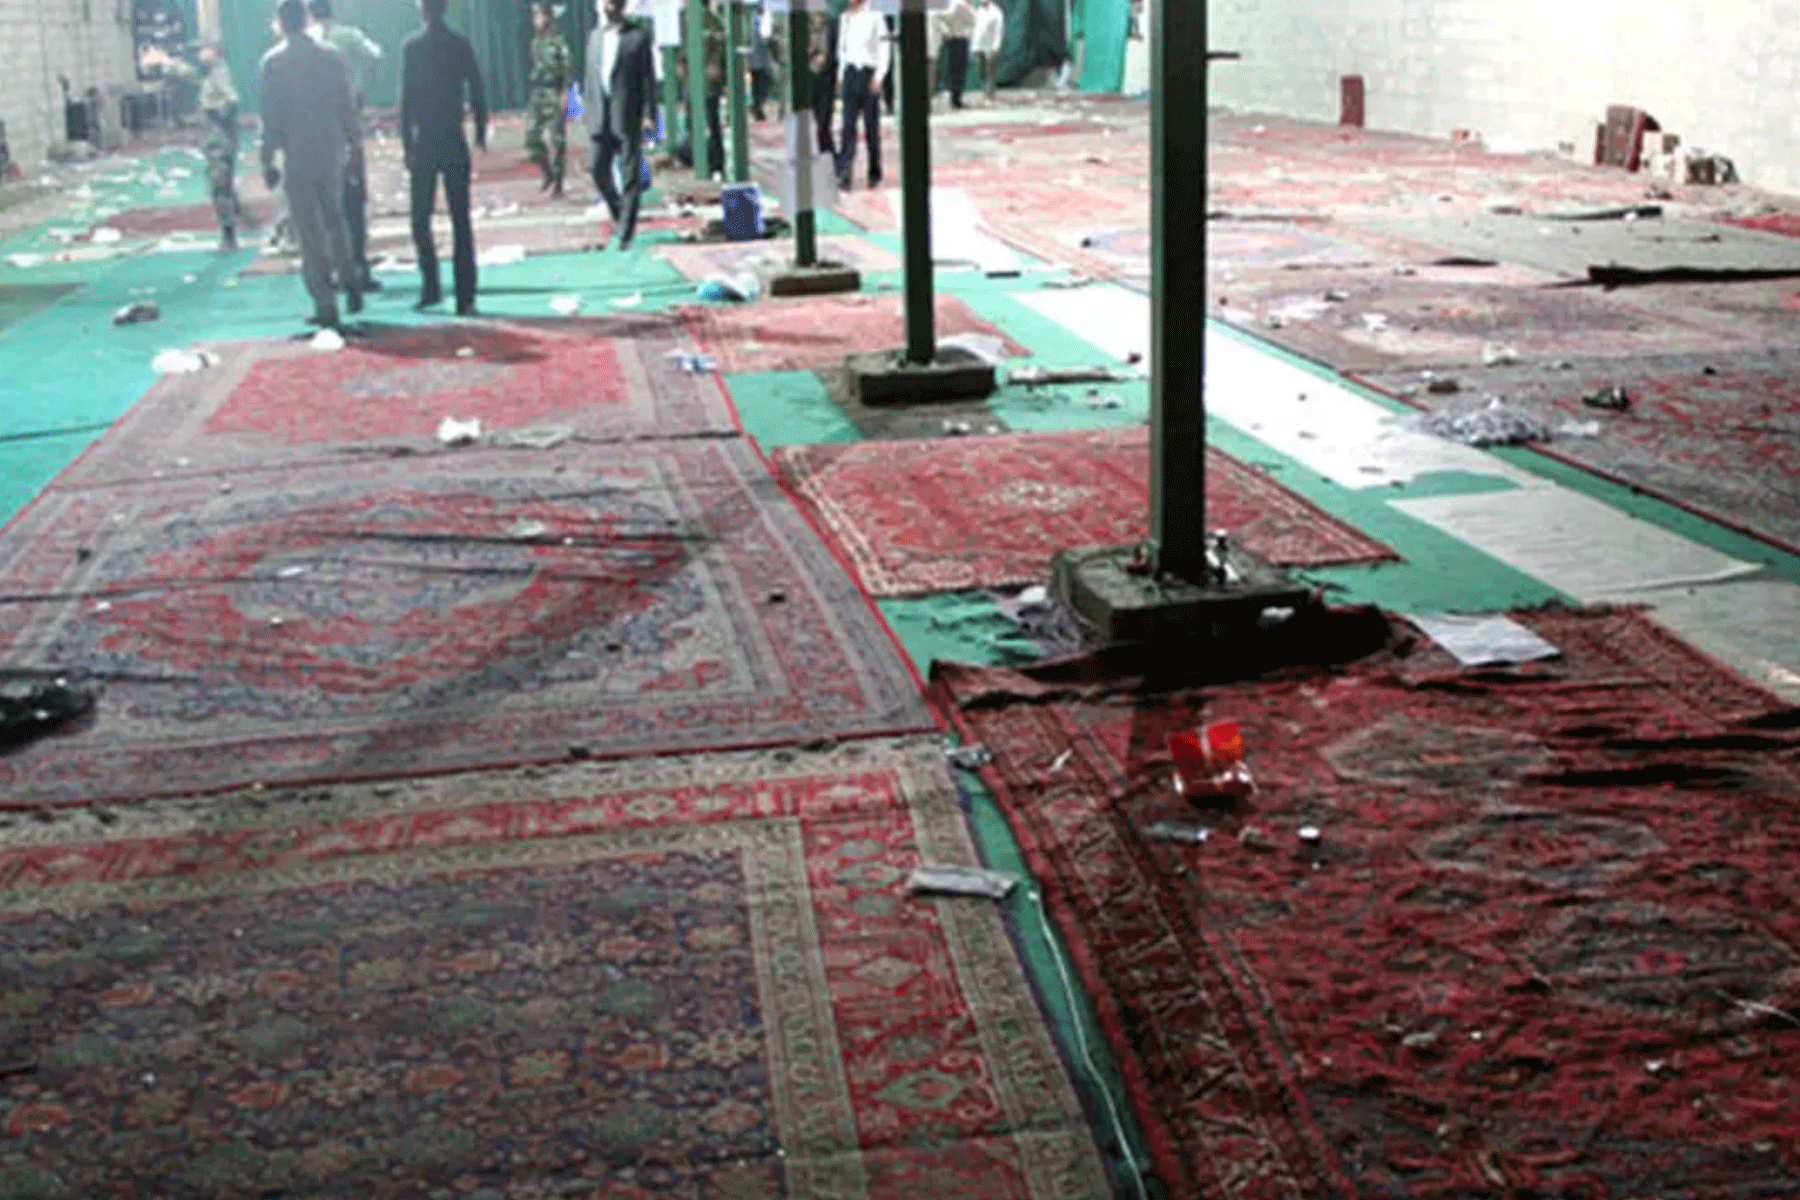 لقطة من تفجير 2008 الذي استهدف مسجدا في شيراز وأسفر عن مقتل 14 شخصا وإصابة 215 بجروح